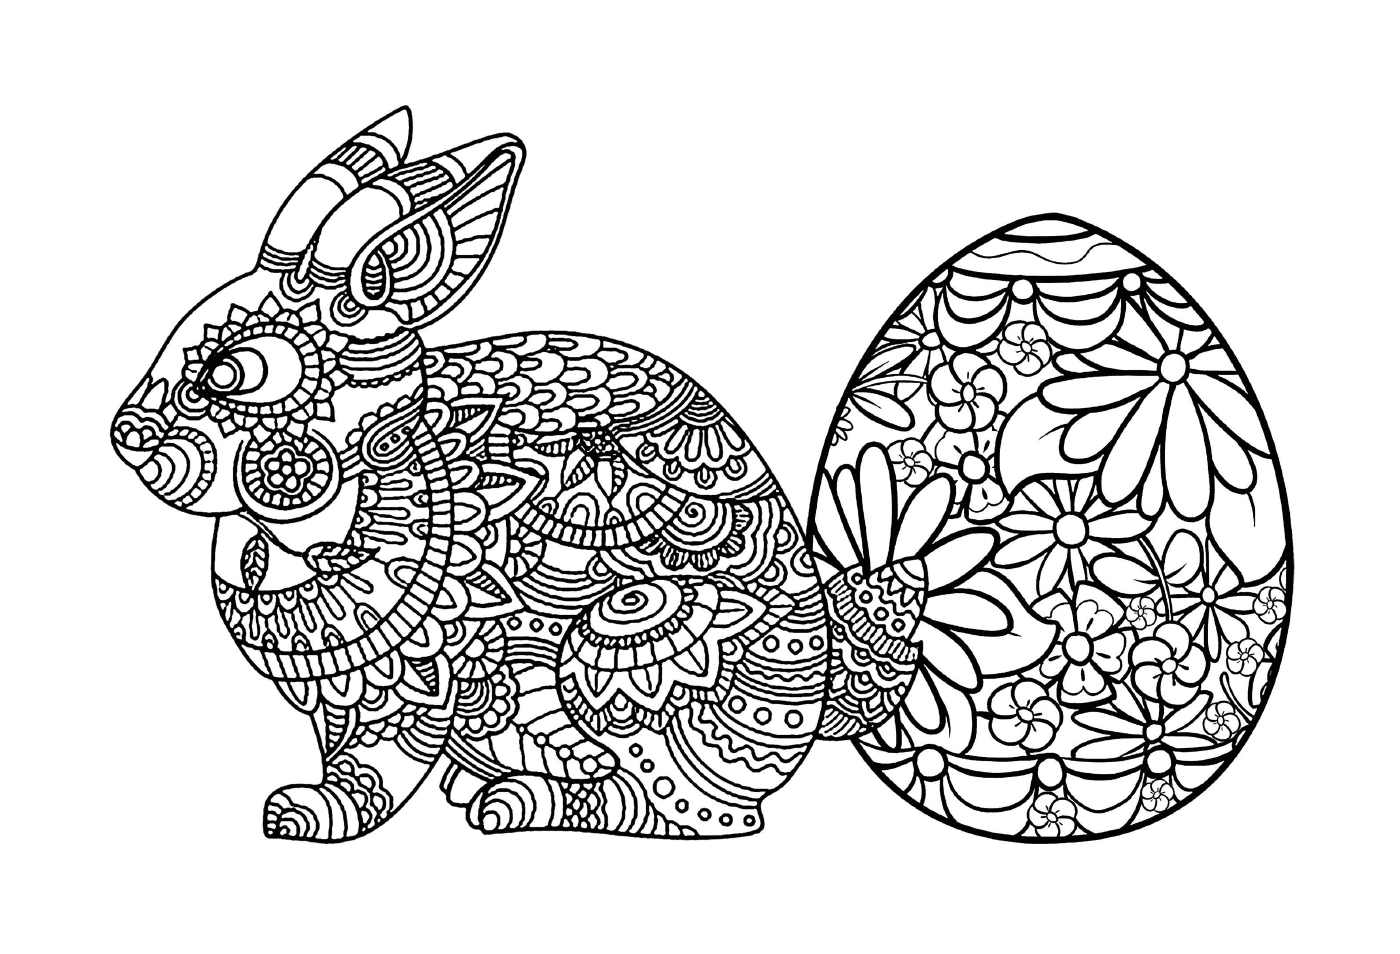  复活节兔子曼达拉 